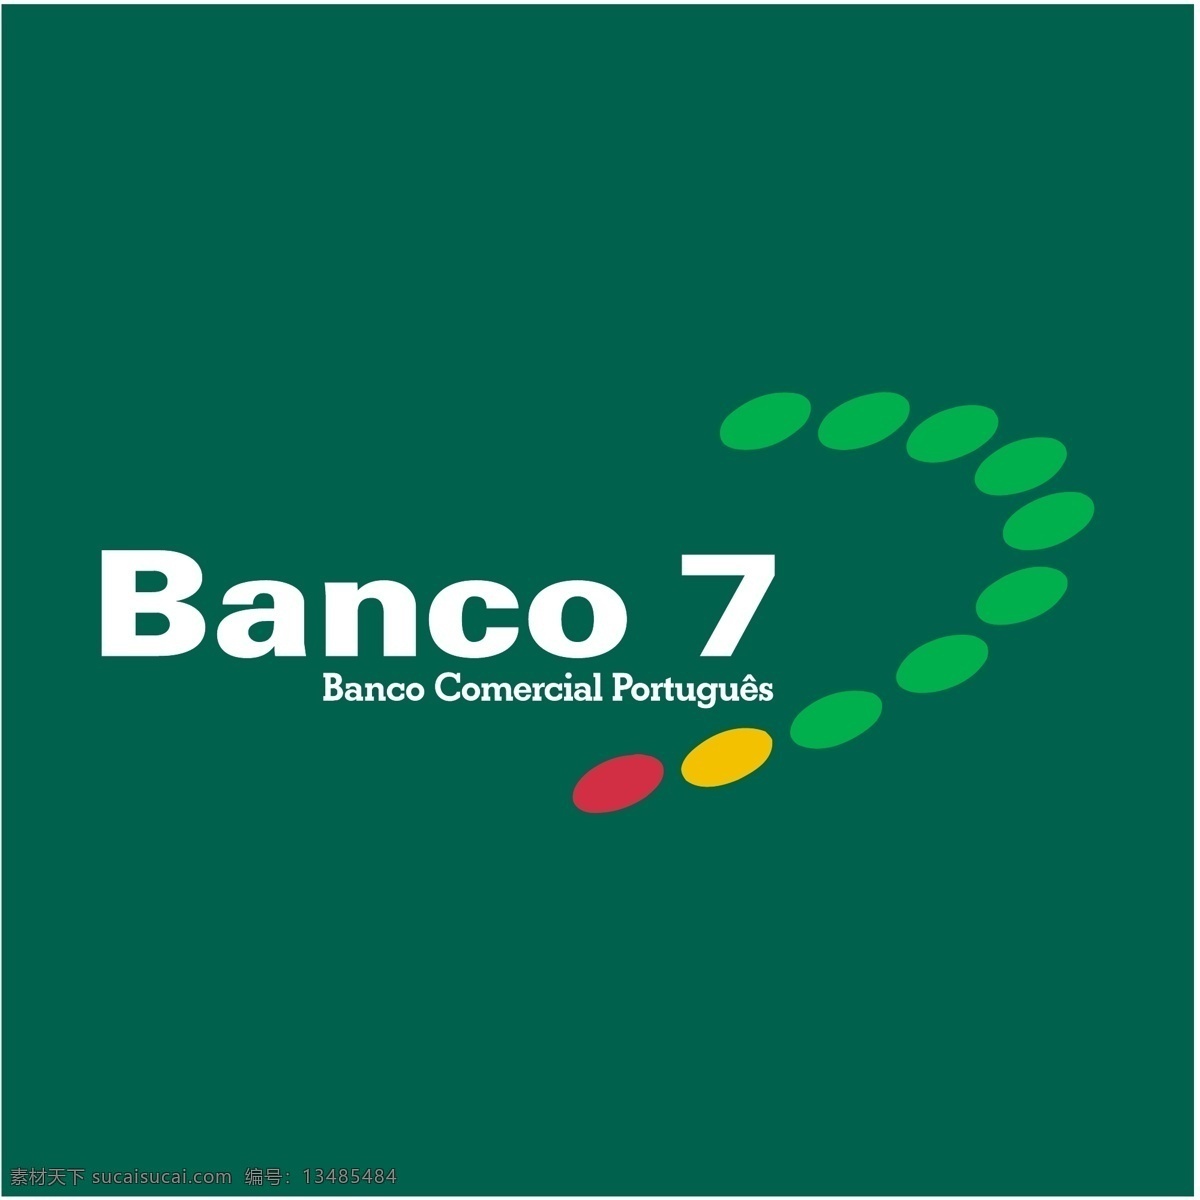 银行7 24小时 矢量标志 银行 标识的银行 banco do brasil 巴西银行 santander sudameris 矢量 标志 大陆银行 nacional 哥斯达黎加 国家银行 bmg 标志的银行 矢量图 建筑家居